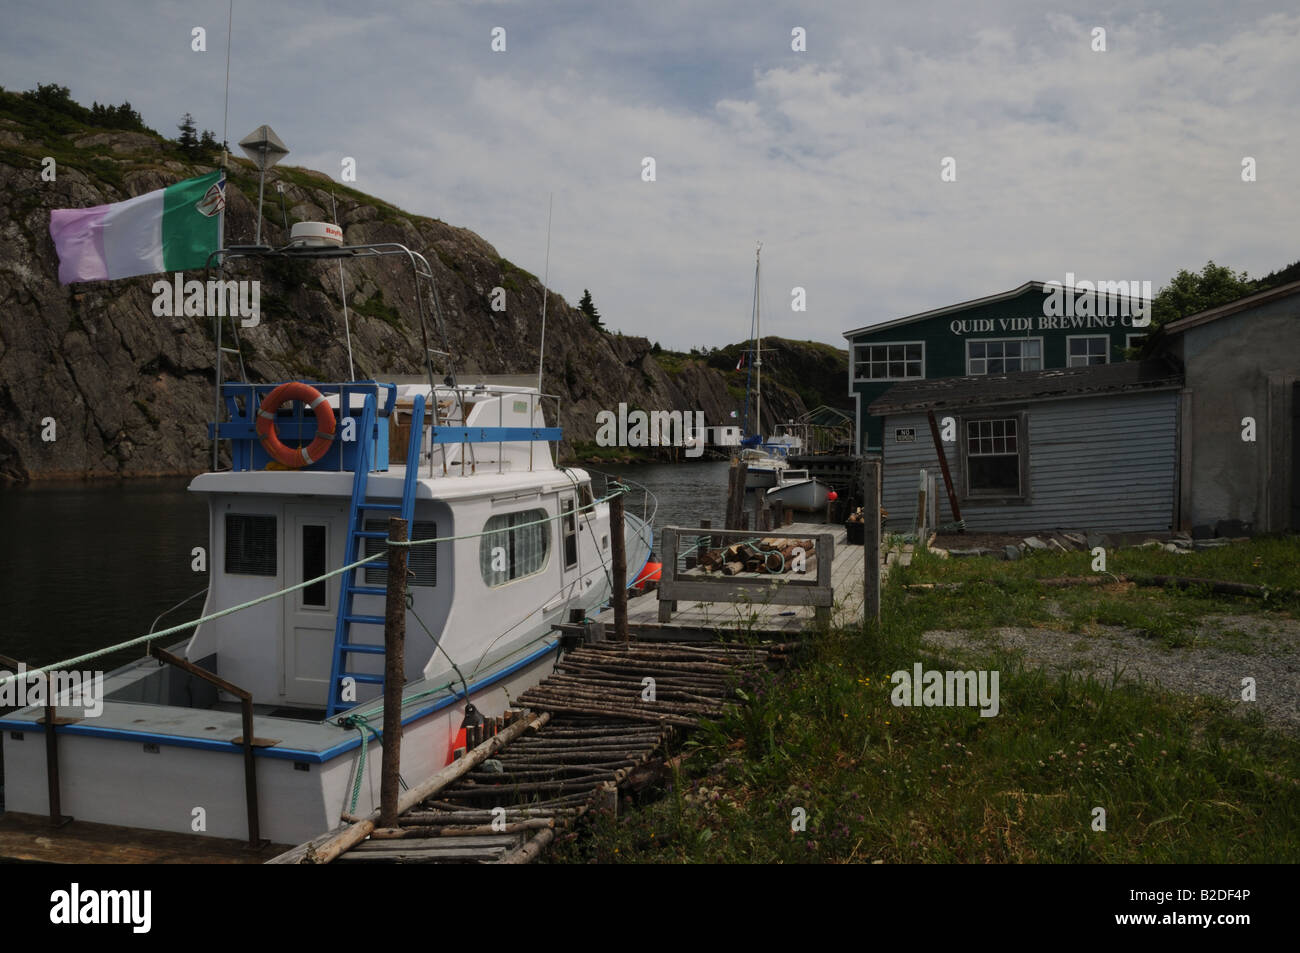 Quidi Vidi est un village de pêcheurs qui est dans les limites de la ville de la capitale de Terre-Neuve, St John's. Banque D'Images